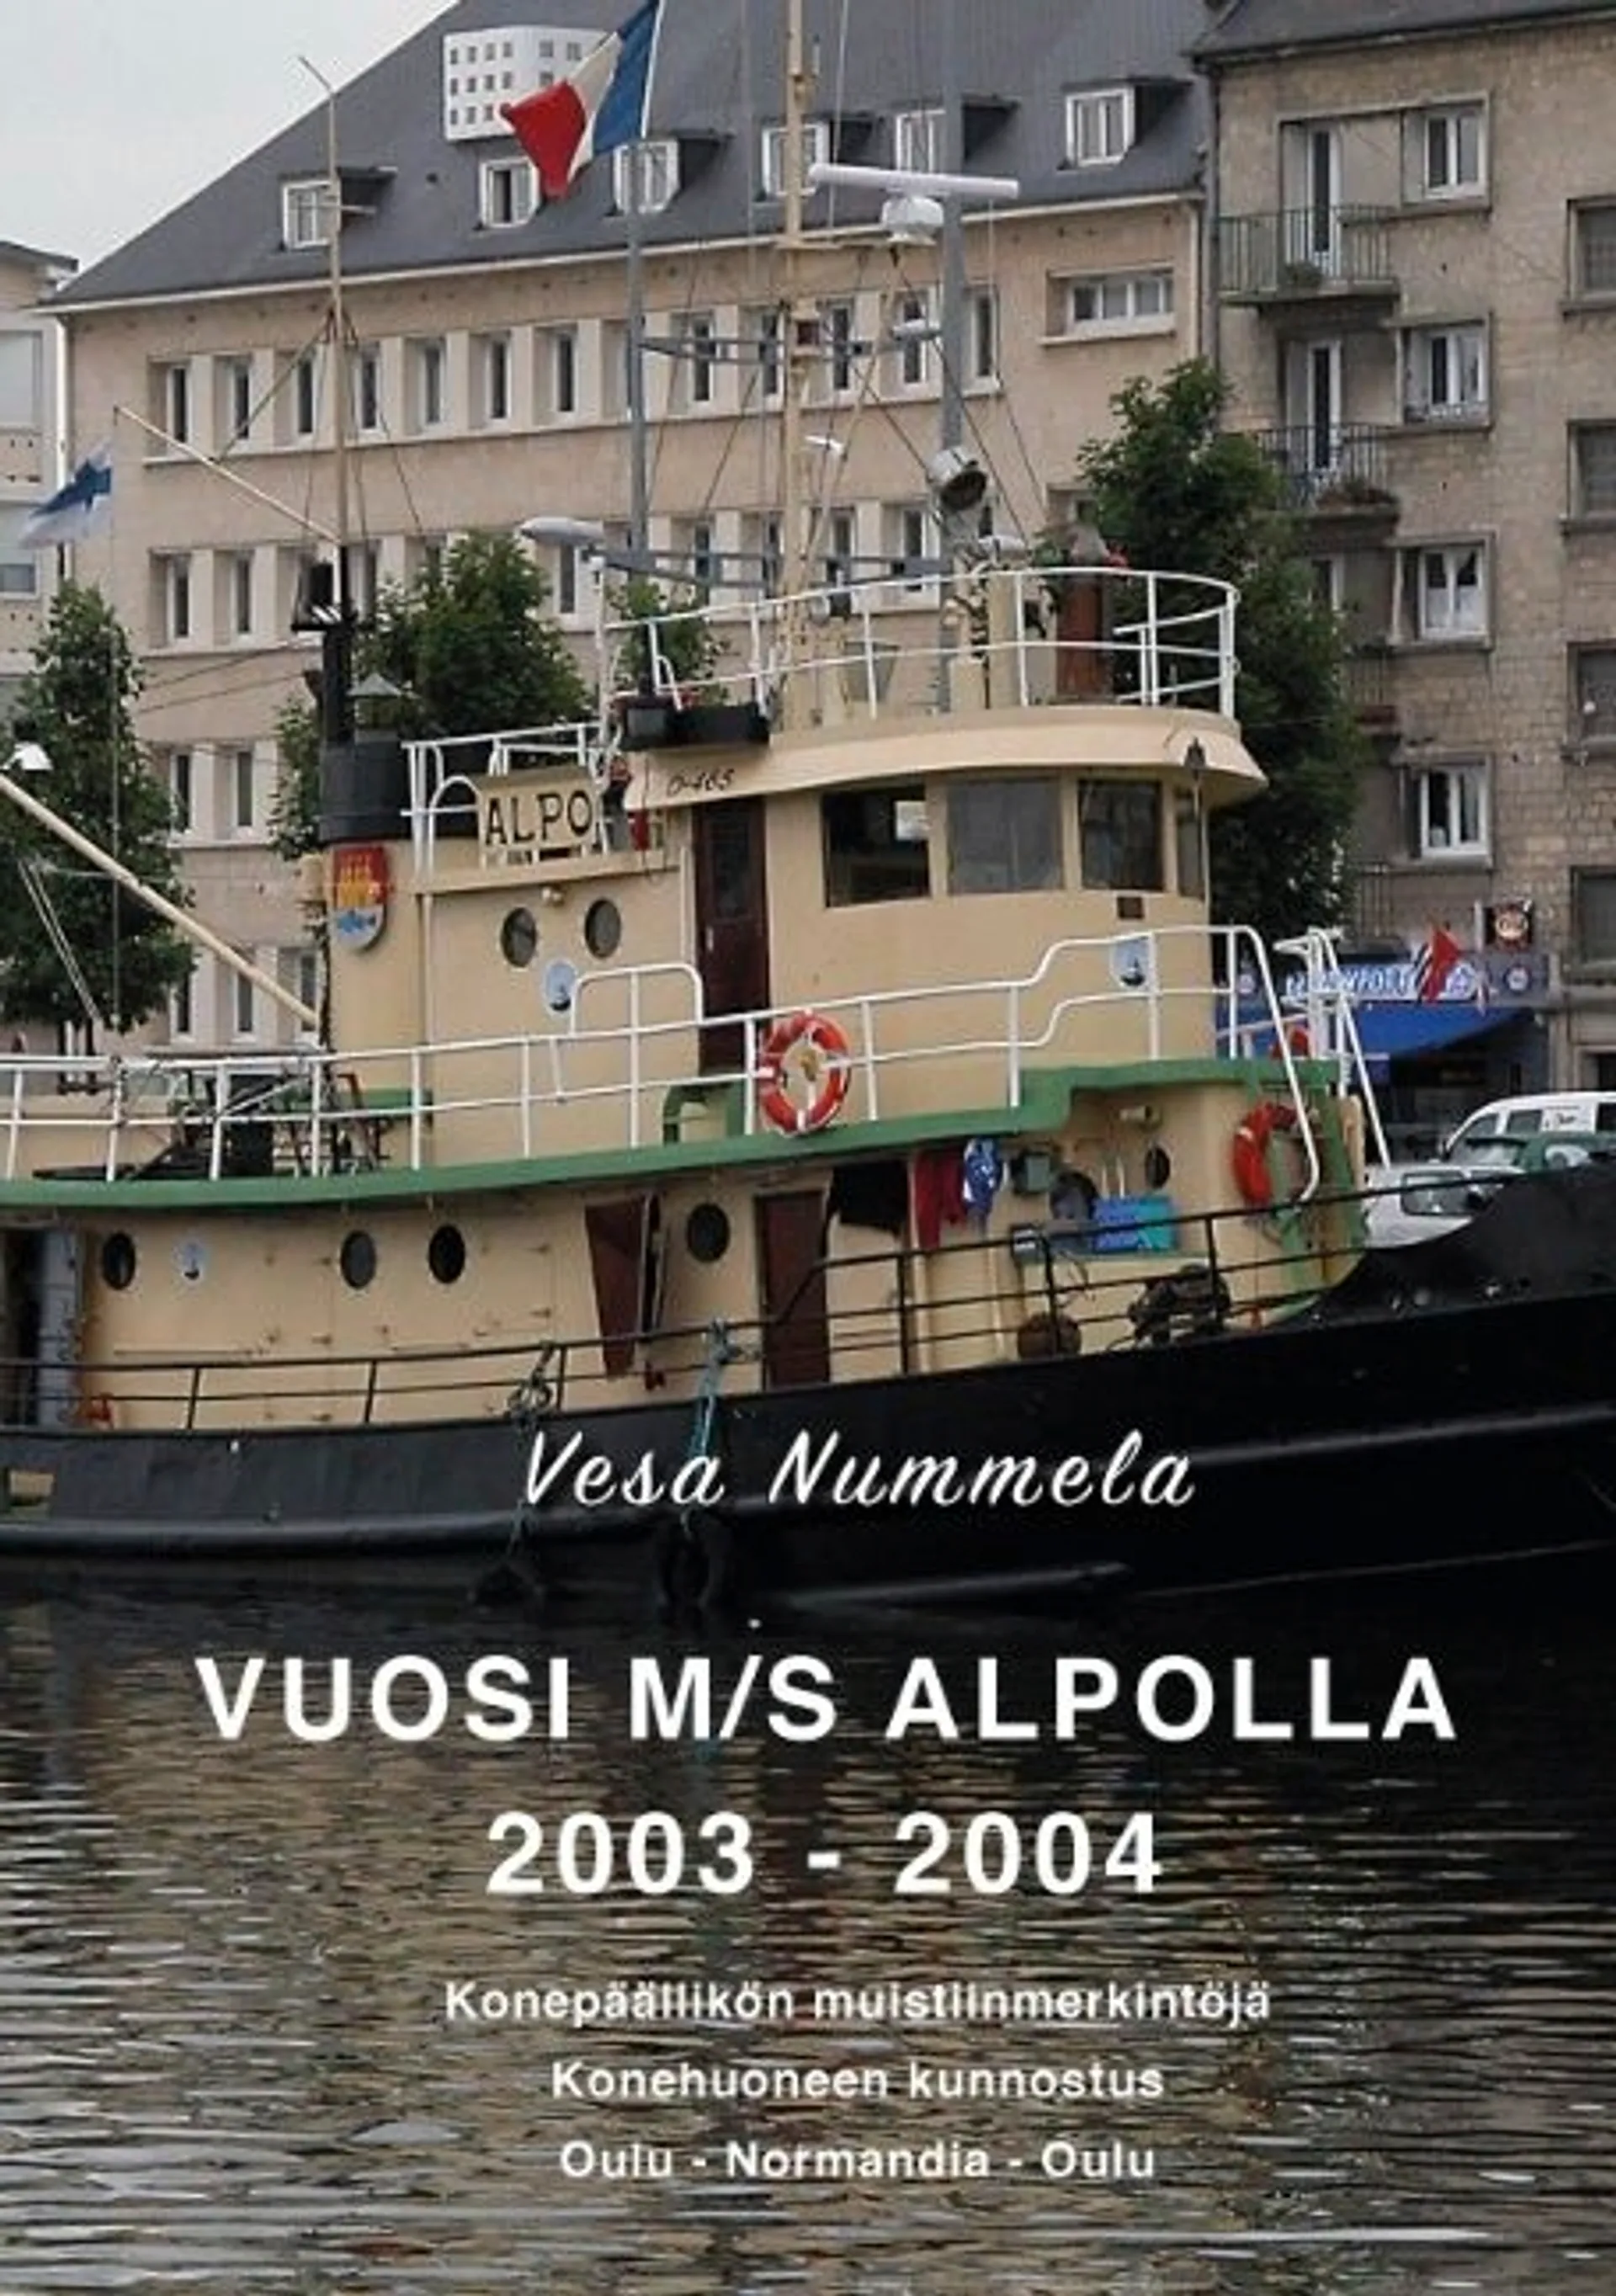 Nummela, Vuosi M/S Alpolla 2003 - 2004